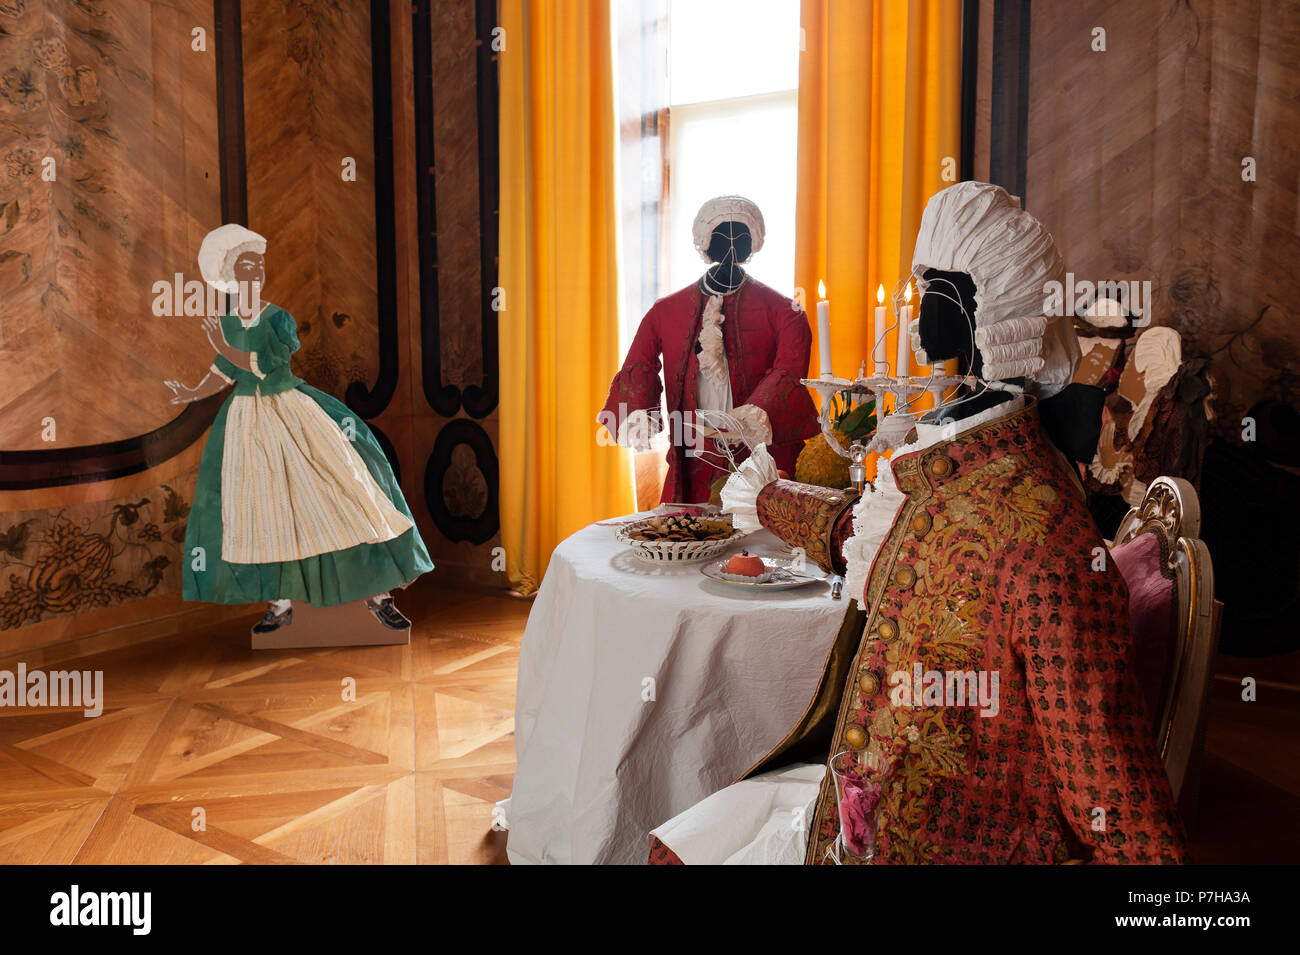 Les mannequins portant des vêtements de style 18ème siècle papier dans Neues Palais Banque D'Images